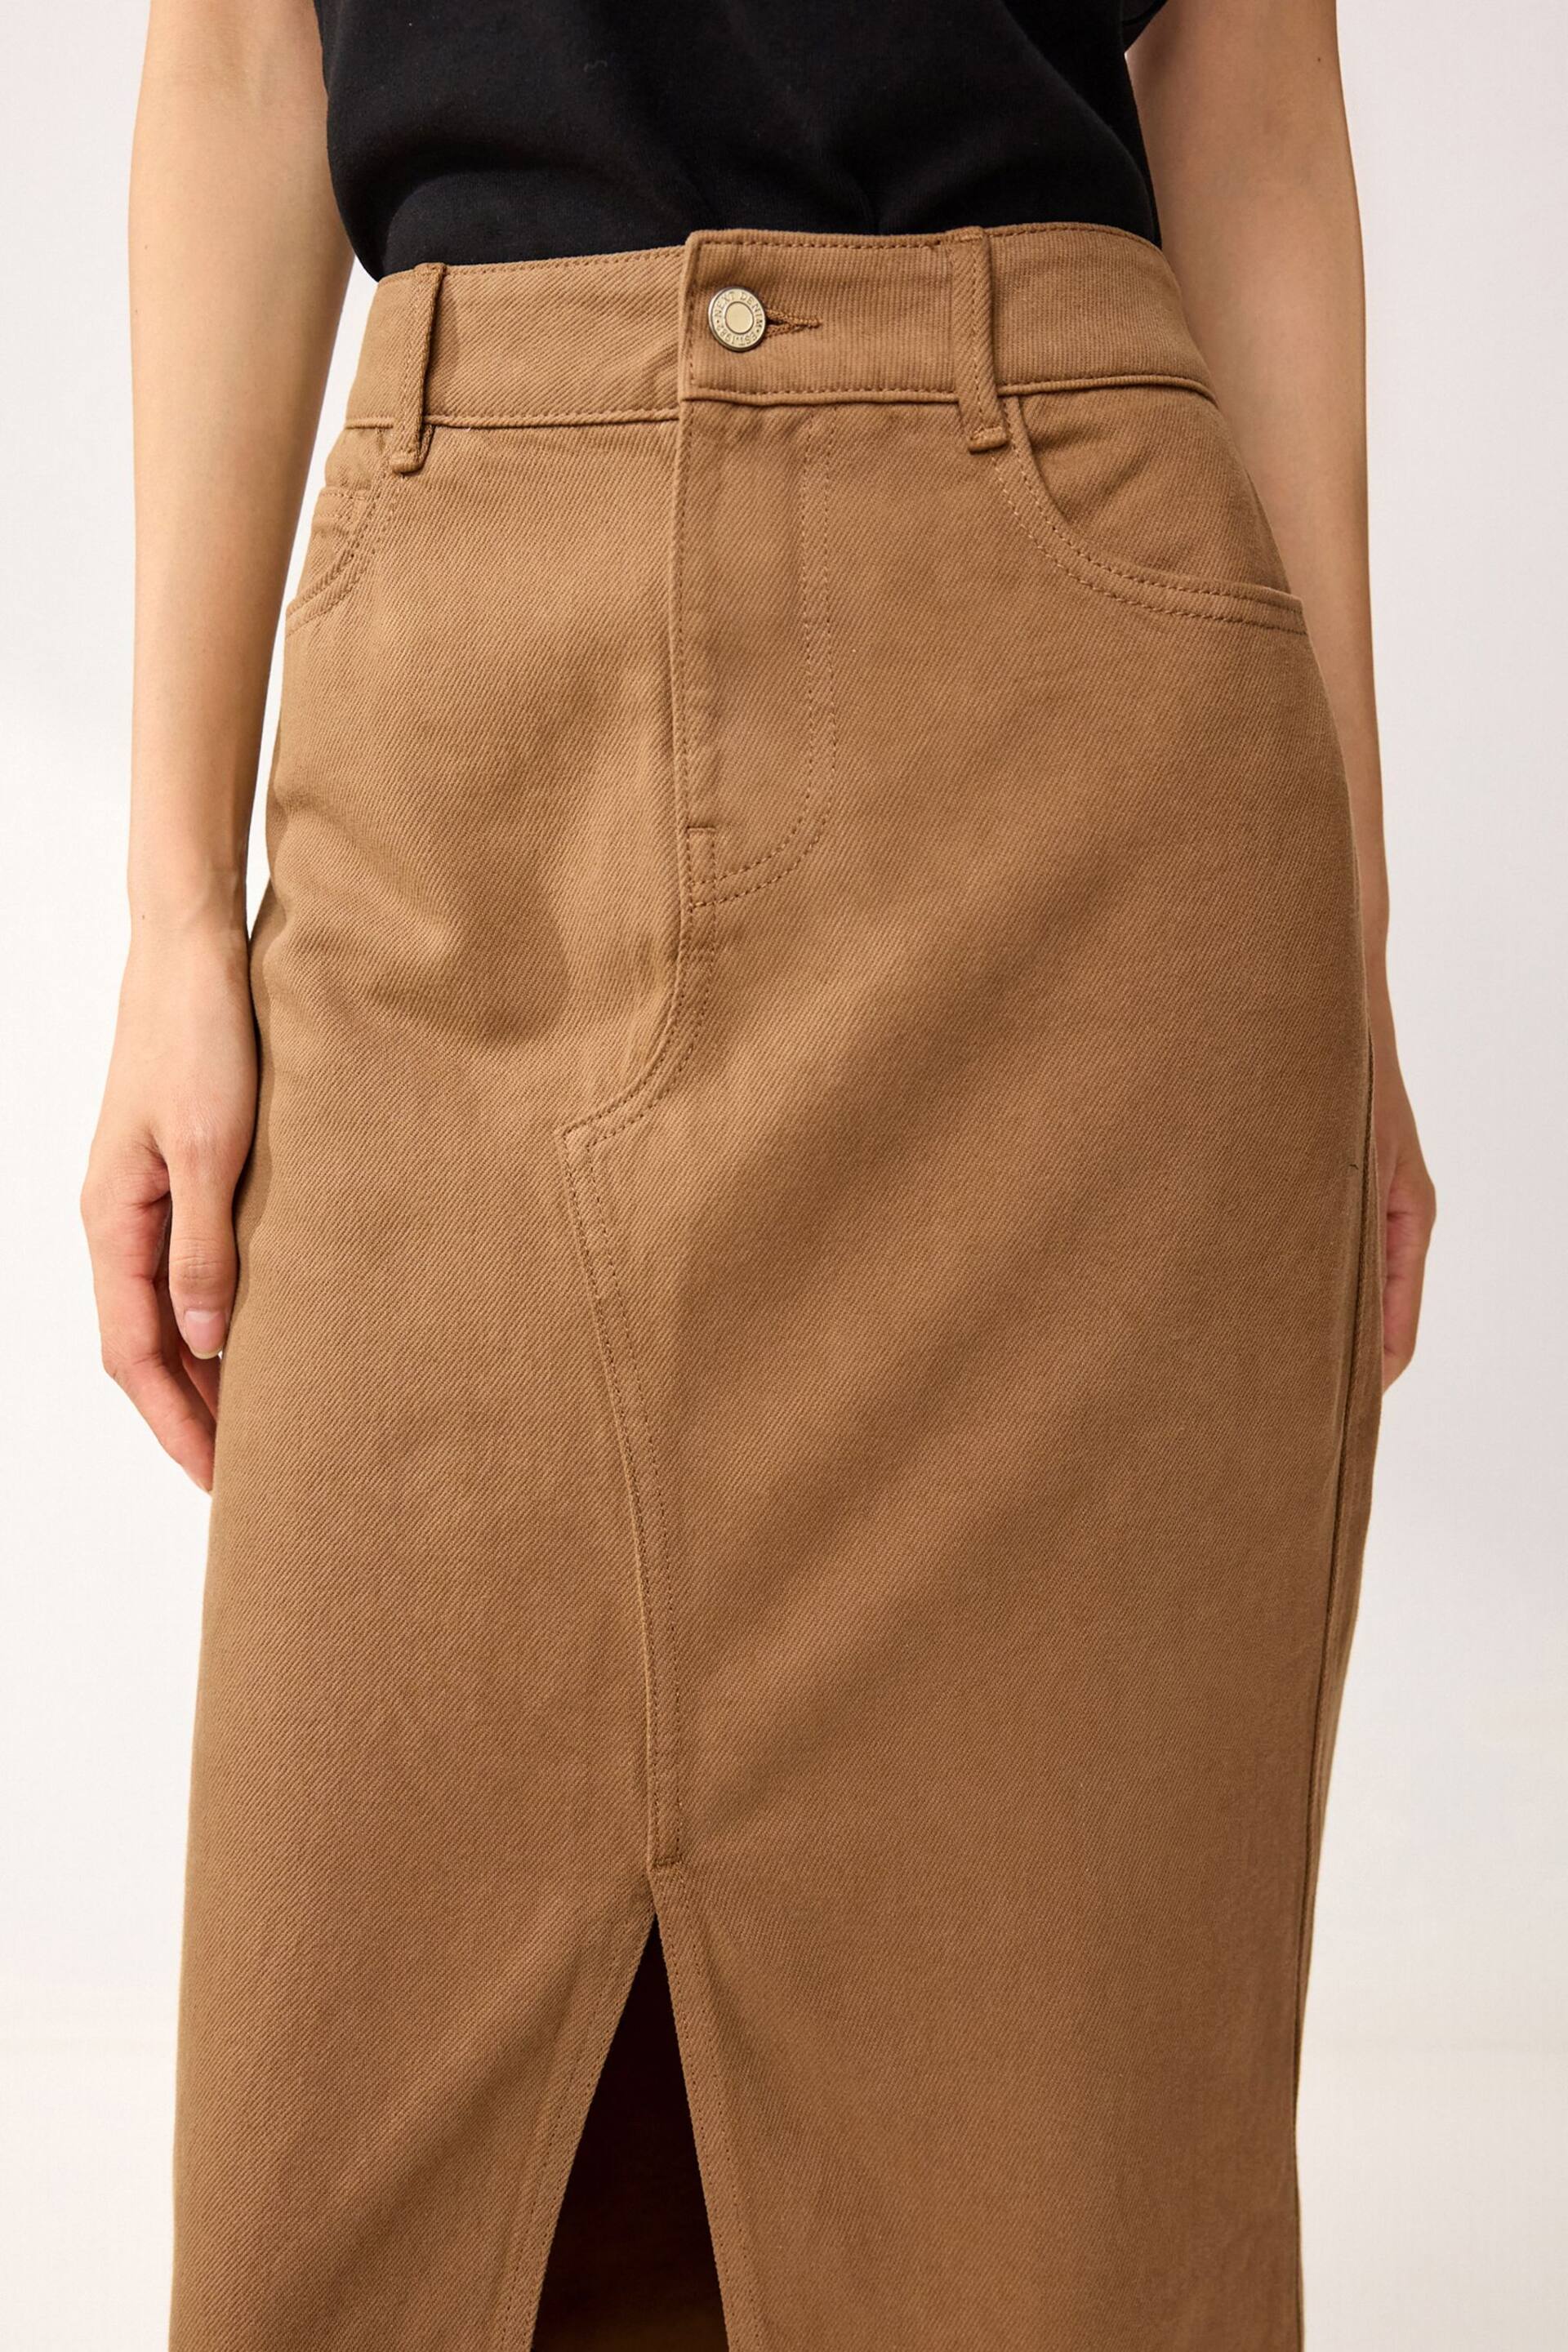 Rust Brown Denim Maxi Skirt - Image 4 of 6